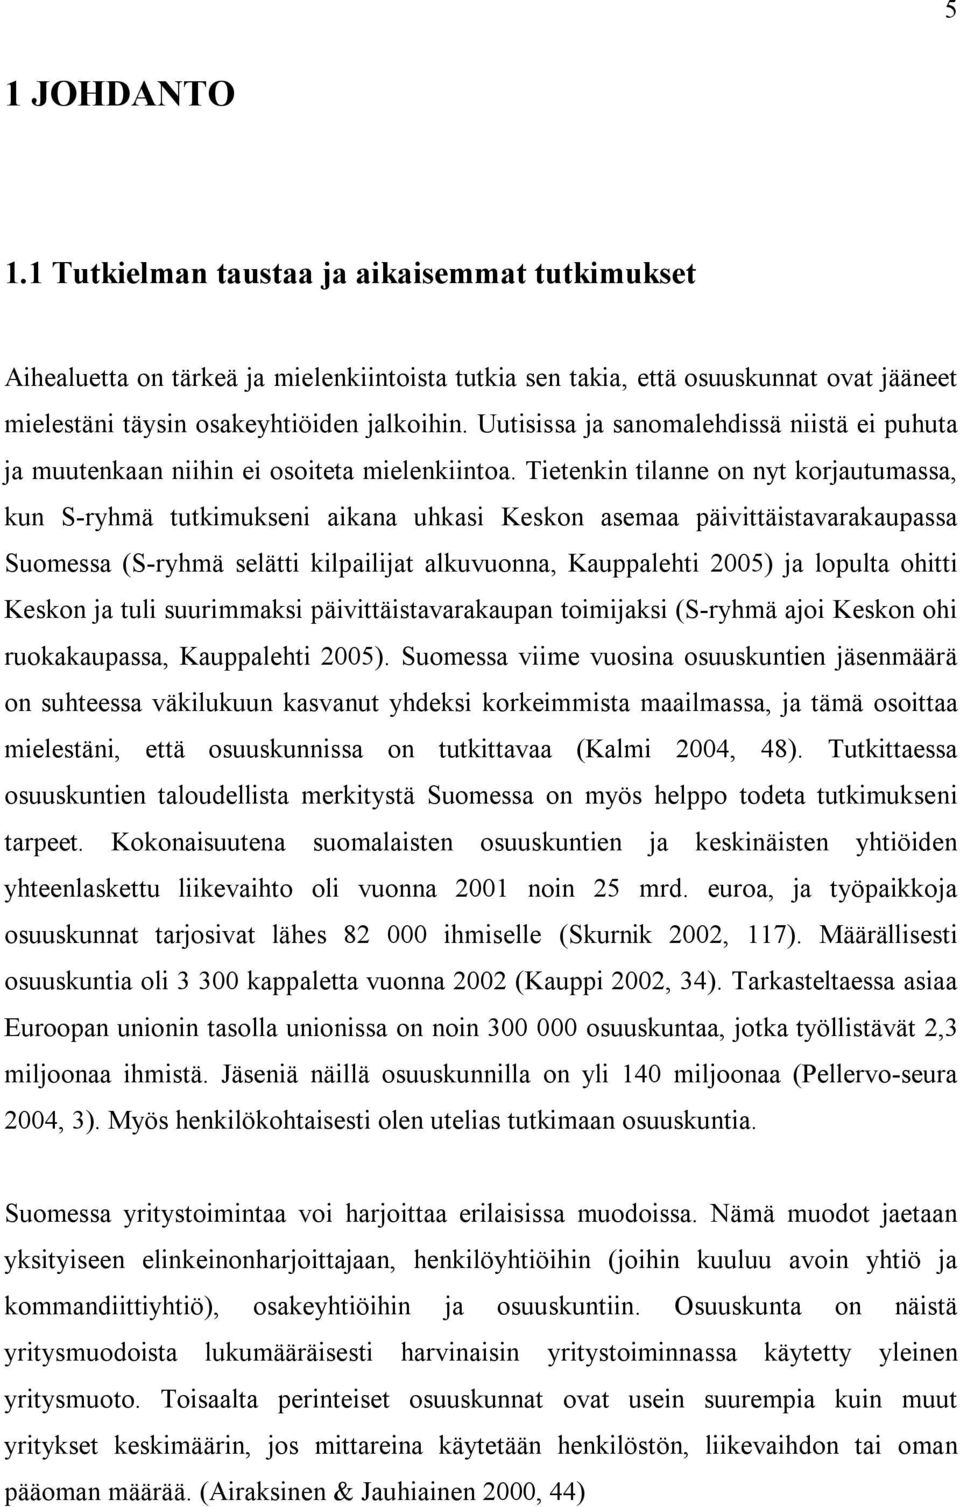 Tietenkin tilanne on nyt korjautumassa, kun S-ryhmä tutkimukseni aikana uhkasi Keskon asemaa päivittäistavarakaupassa Suomessa (S-ryhmä selätti kilpailijat alkuvuonna, Kauppalehti 2005) ja lopulta